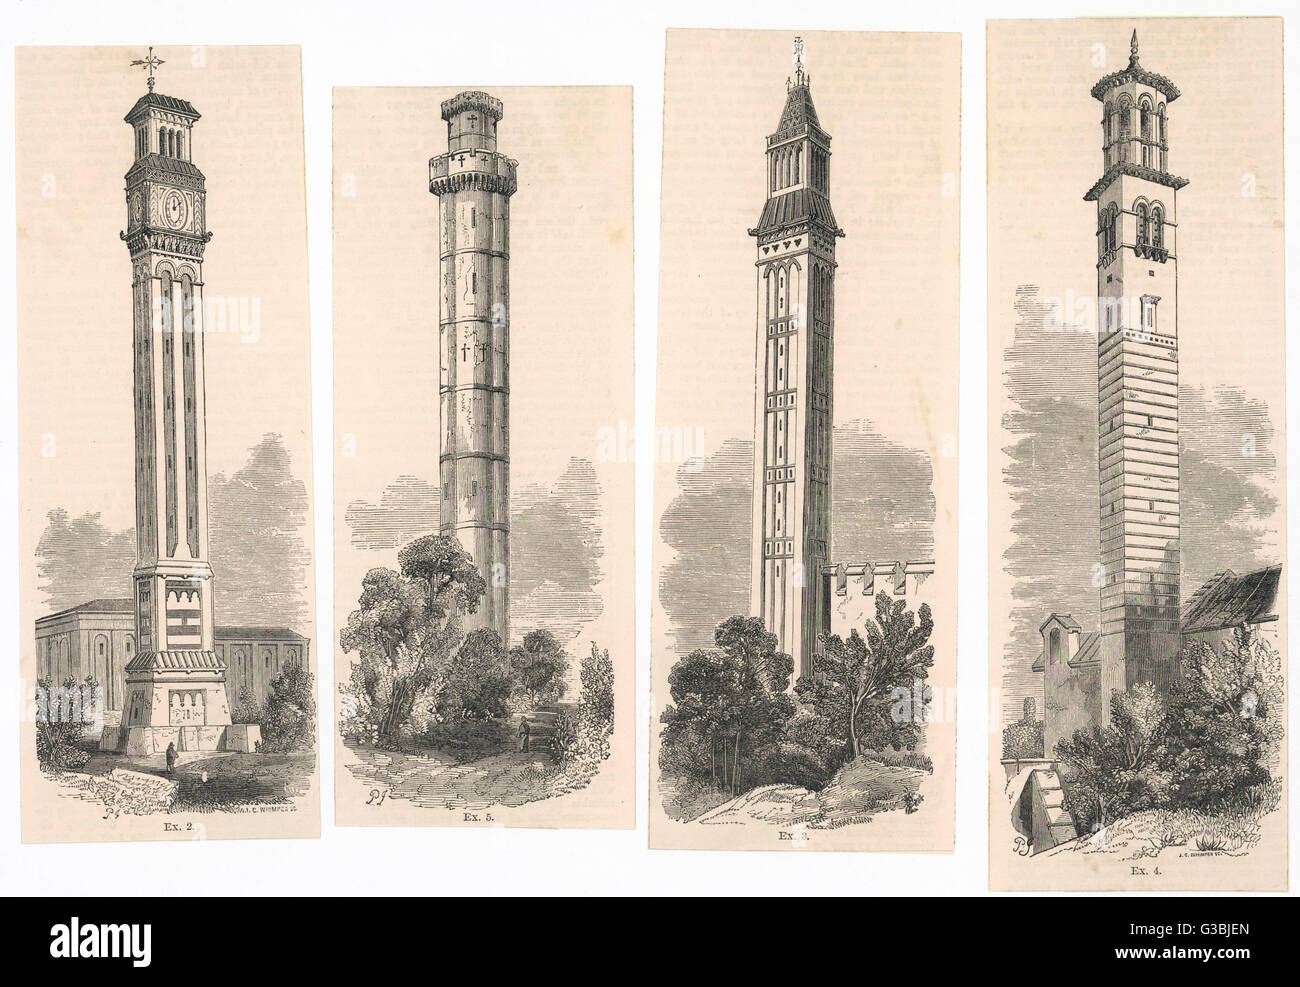 Una selección de torres y chimeneas con detalles arquitectónicos Fecha: 1850 Foto de stock